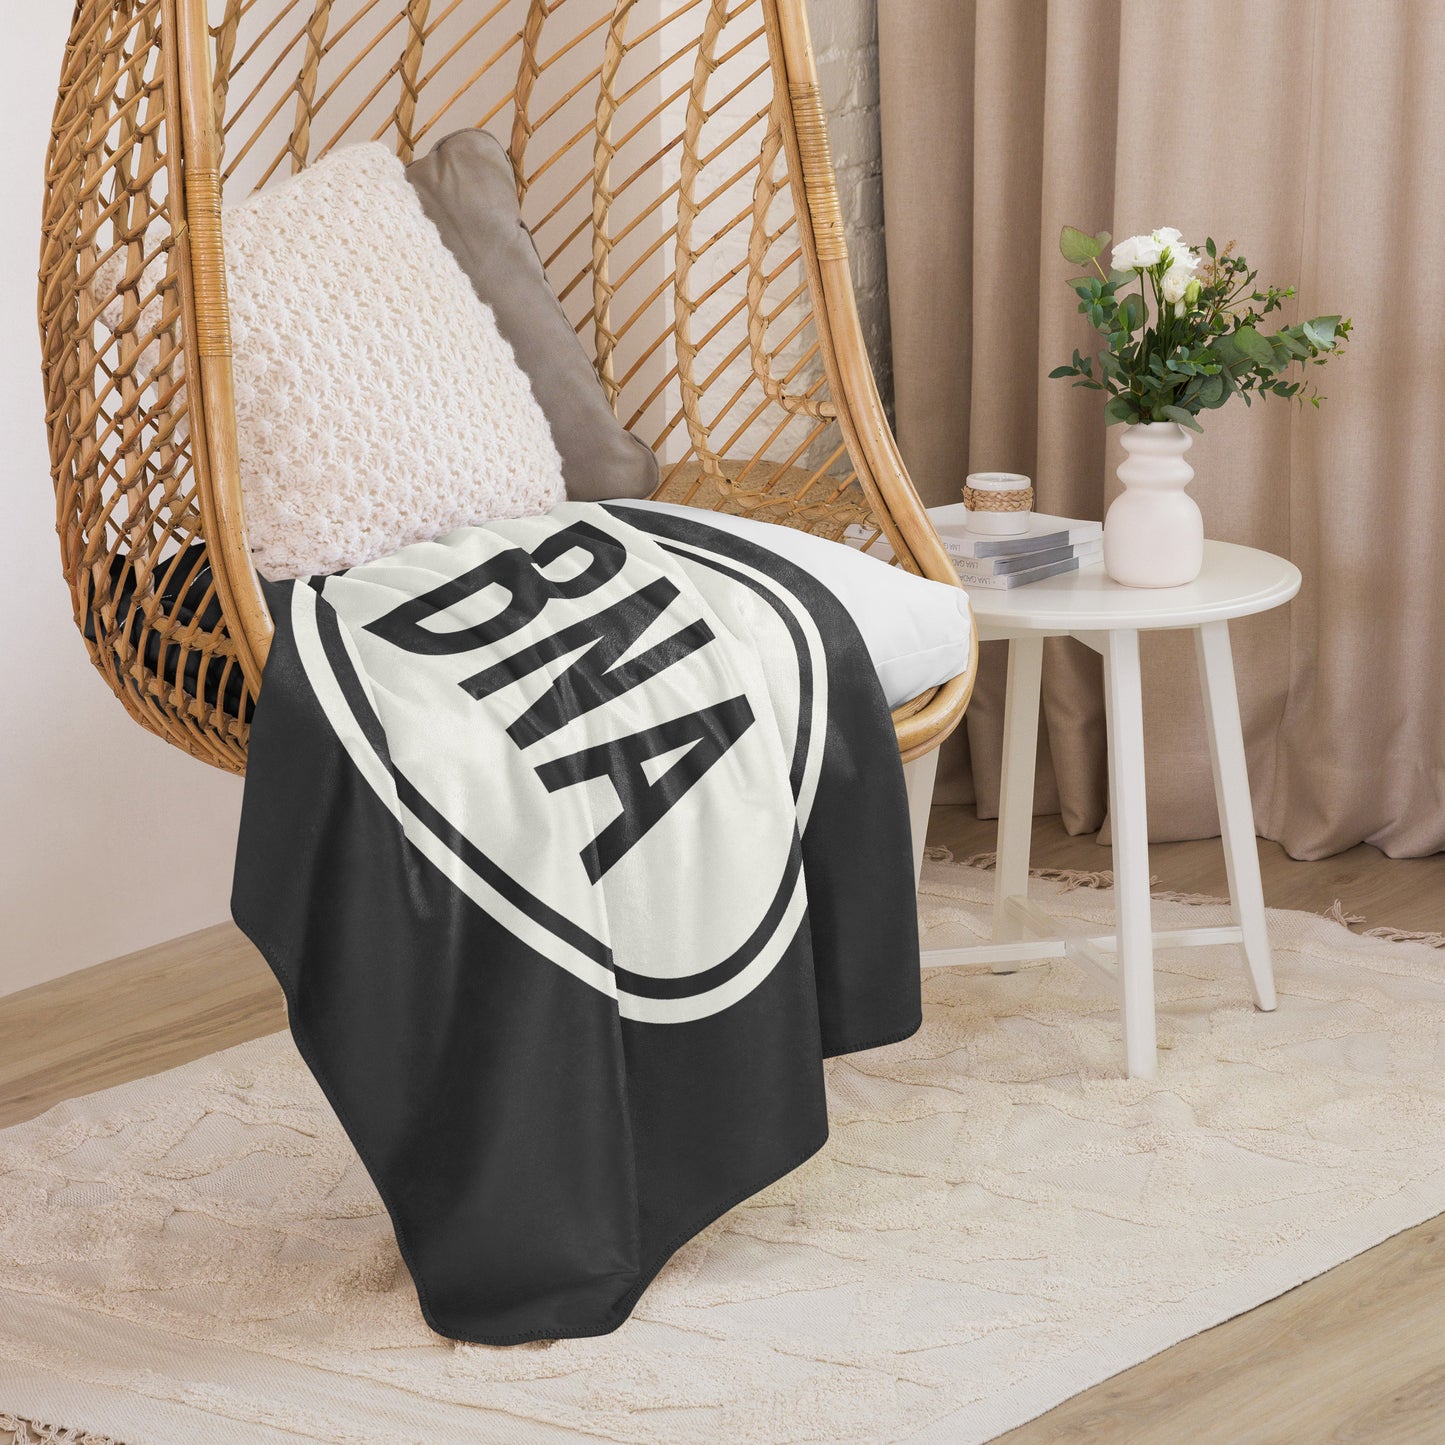 Unique Travel Gift Sherpa Blanket - White Oval • BNA Nashville • YHM Designs - Image 06